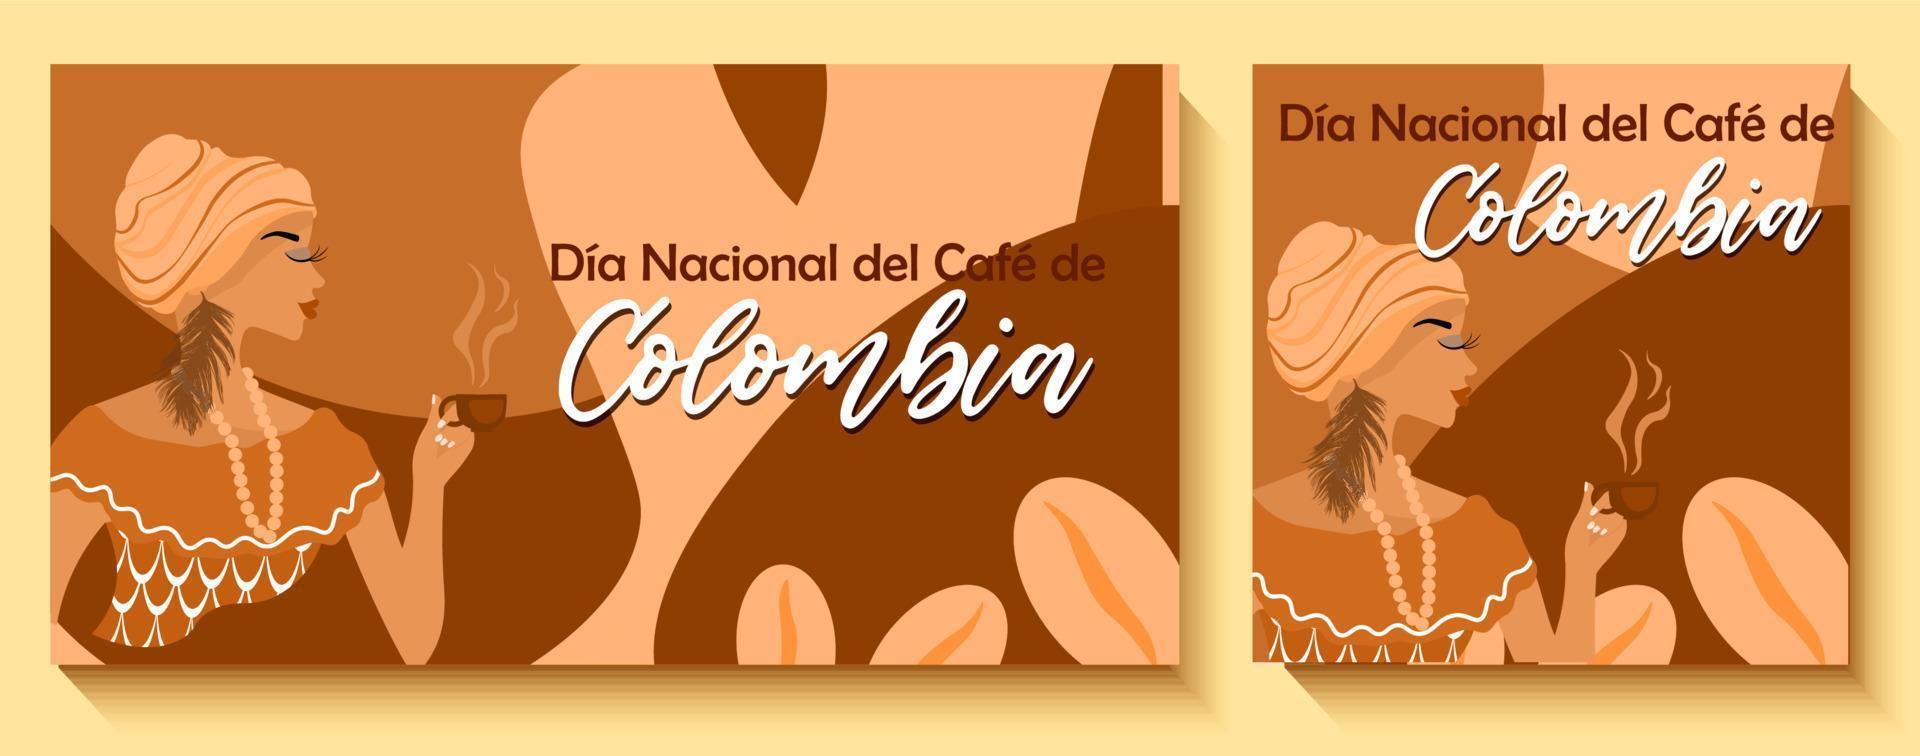 nacional café dia dentro Colômbia bandeira. afro-colombiana mulher segurando uma copo do café dentro dela mão. nacional colombiano roupas. inscrição dentro espanhol nacional café dia dentro Colômbia vetor